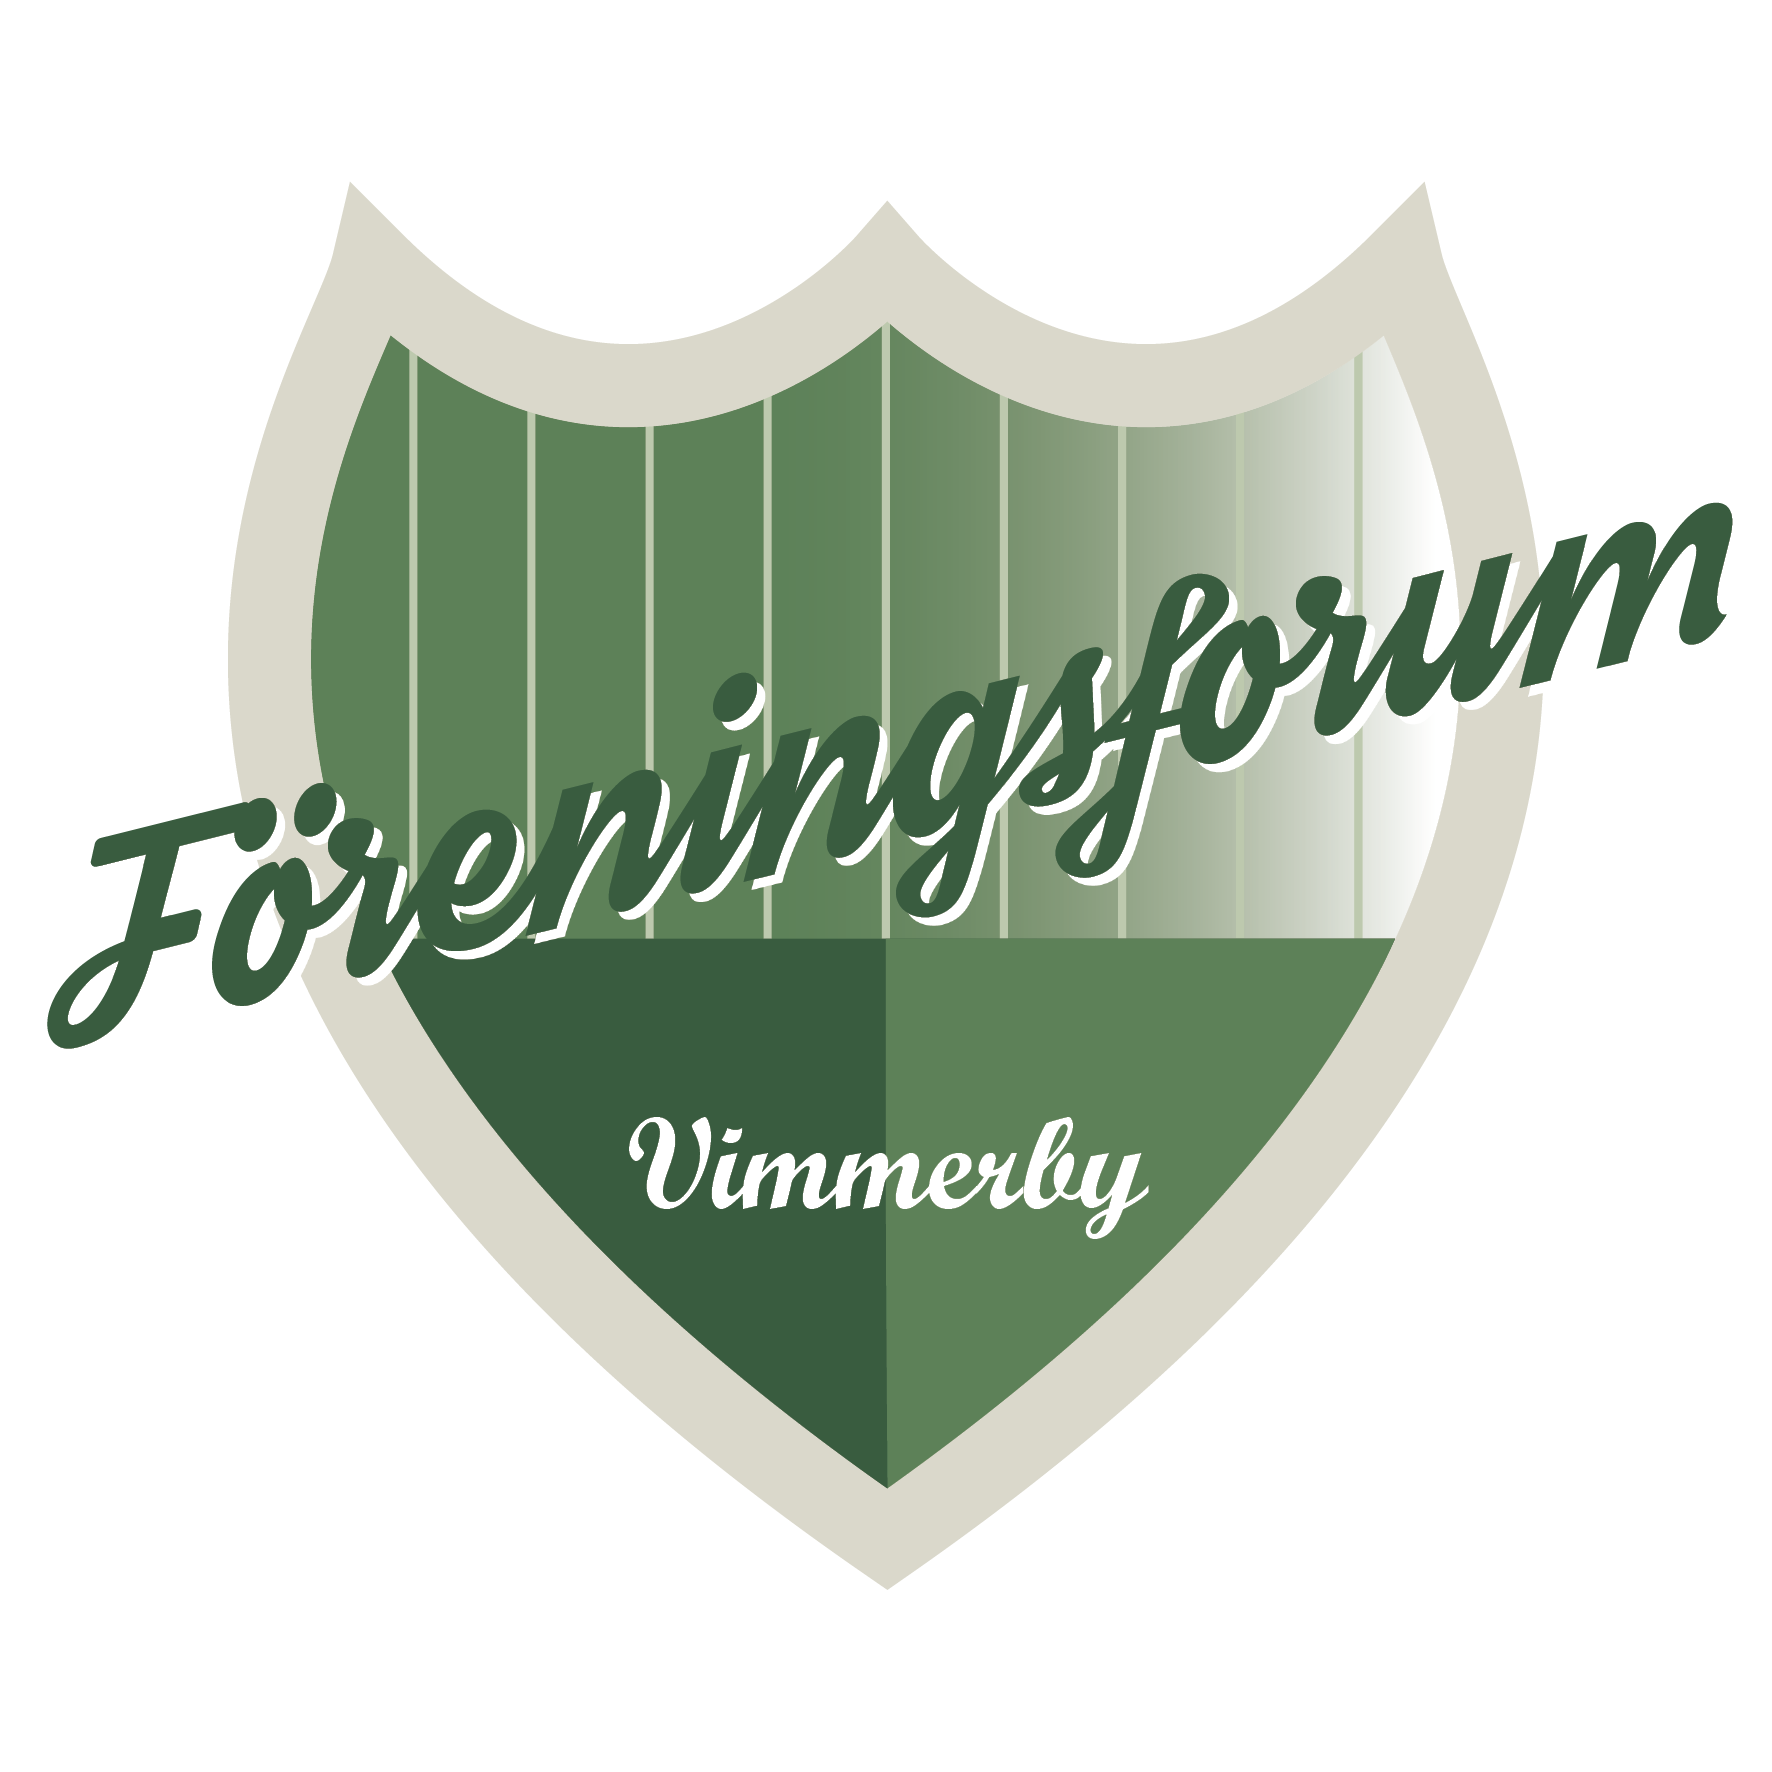 Symbol: Föreningsforum Vimmerby